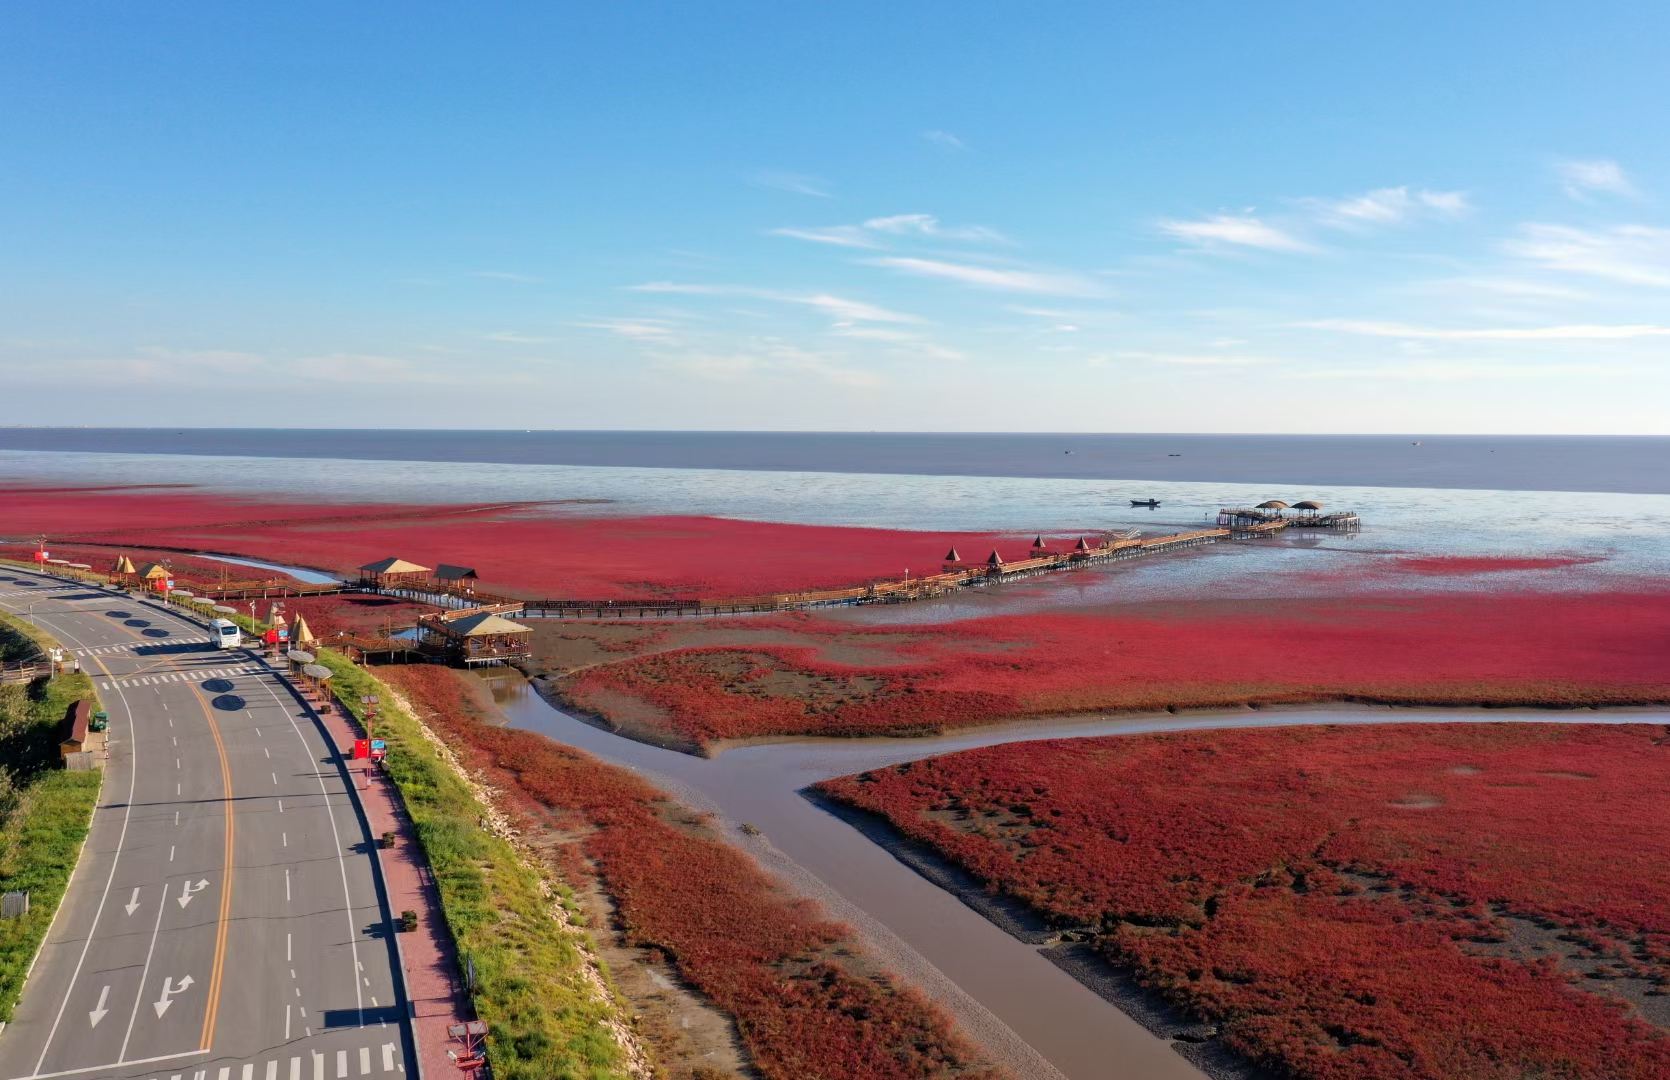 即将截稿——“世界红色海岸线”盘锦红海滩摄影大展--中国摄影家协会网